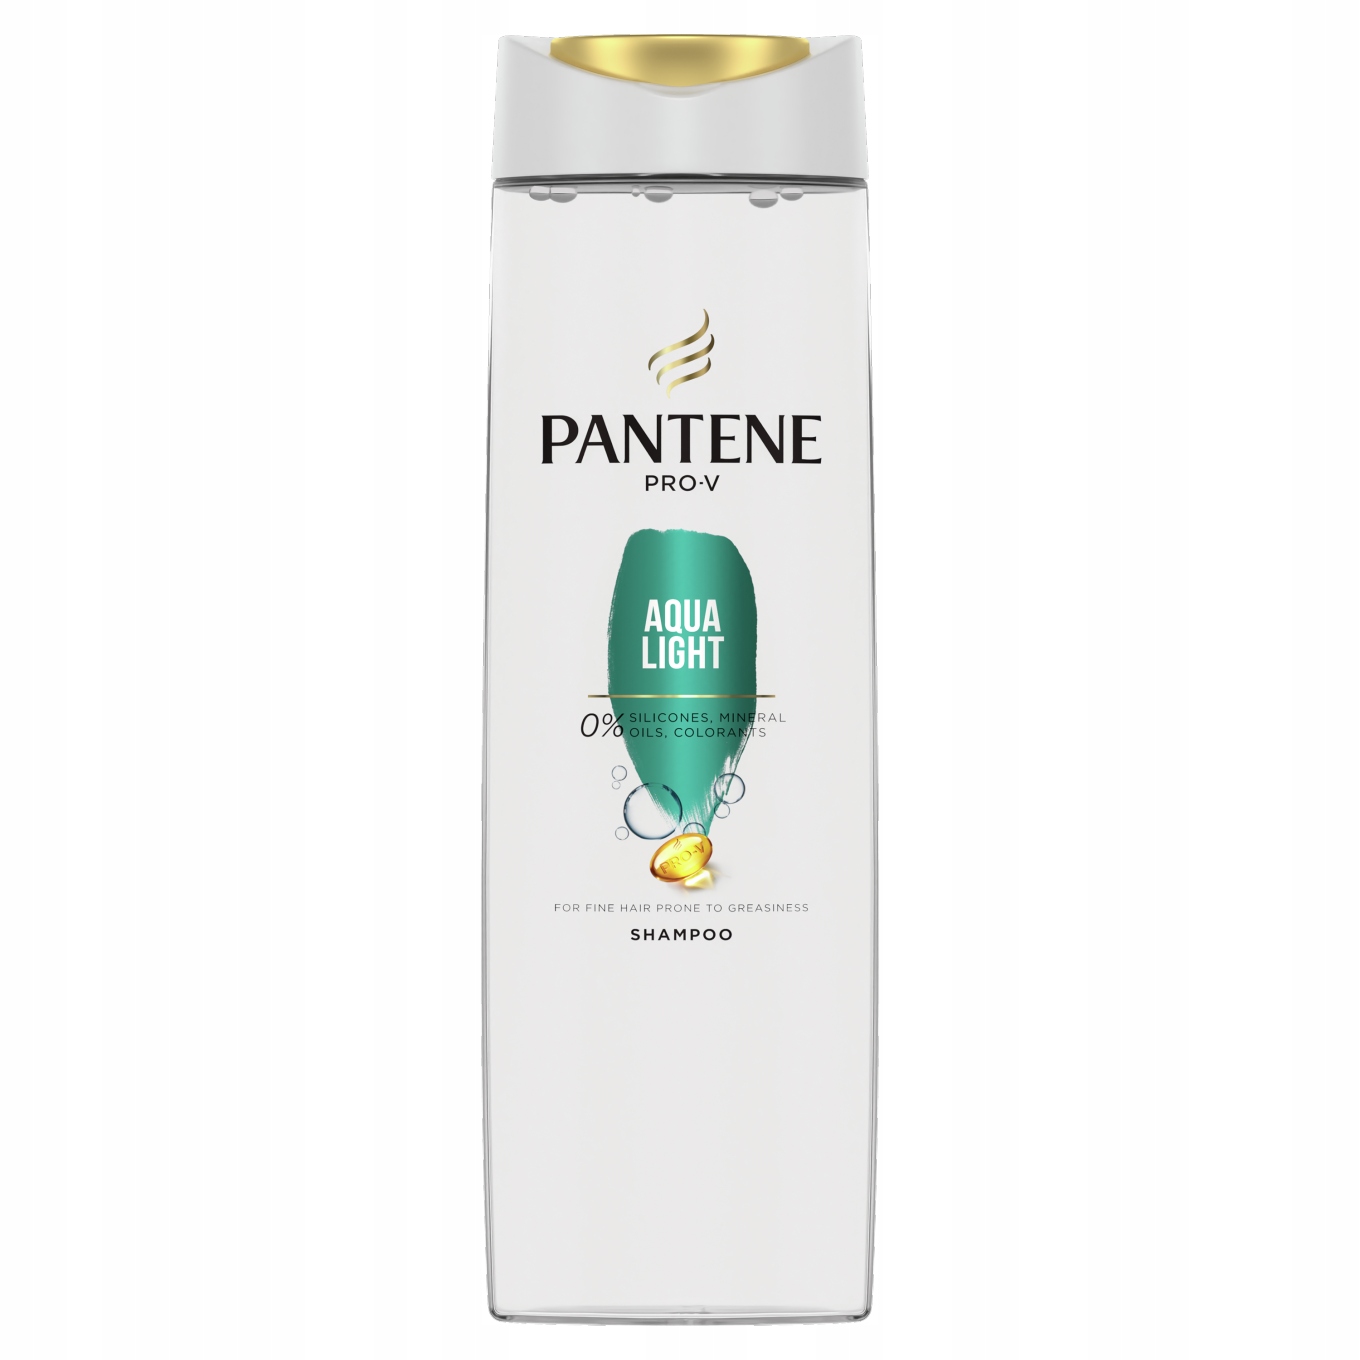 szampon pantene włosy przetłuszczające